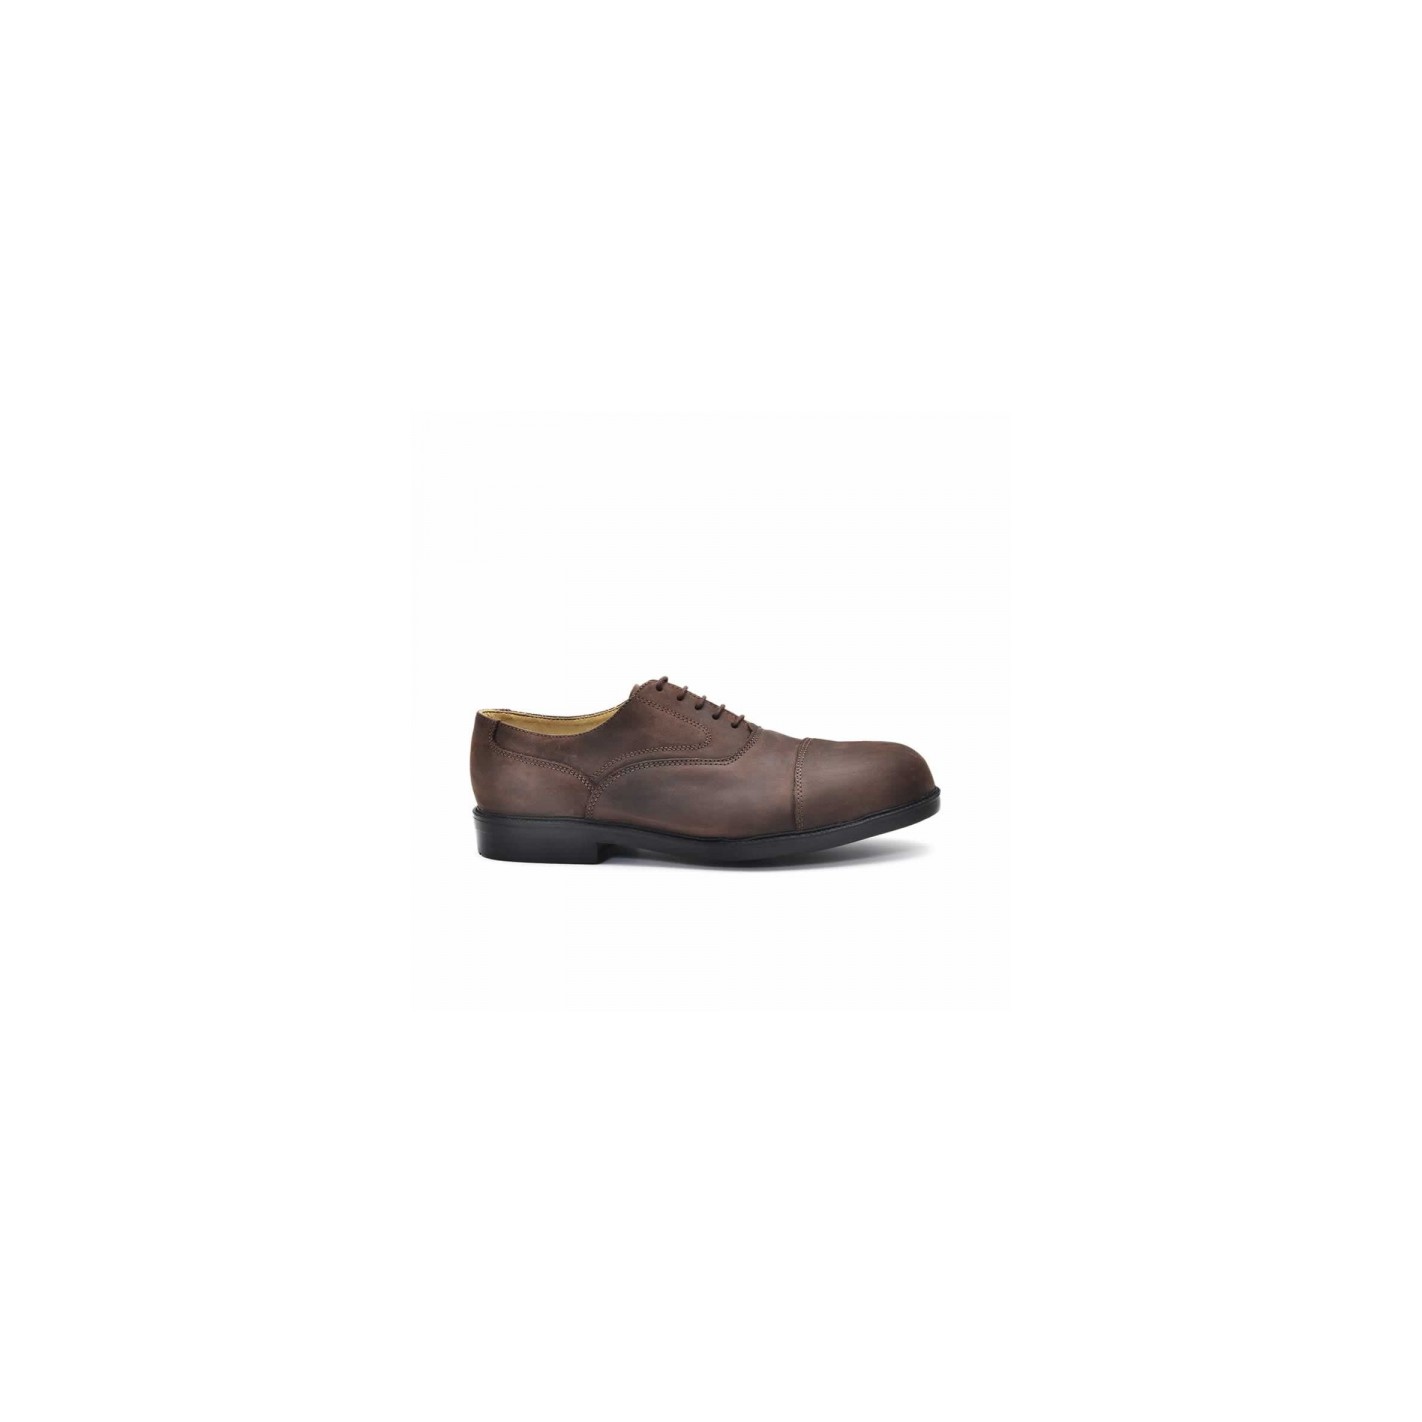 Desatado liverpool 2 s3 src seguridad zapatos zapatos de trabajo altamente marrón 